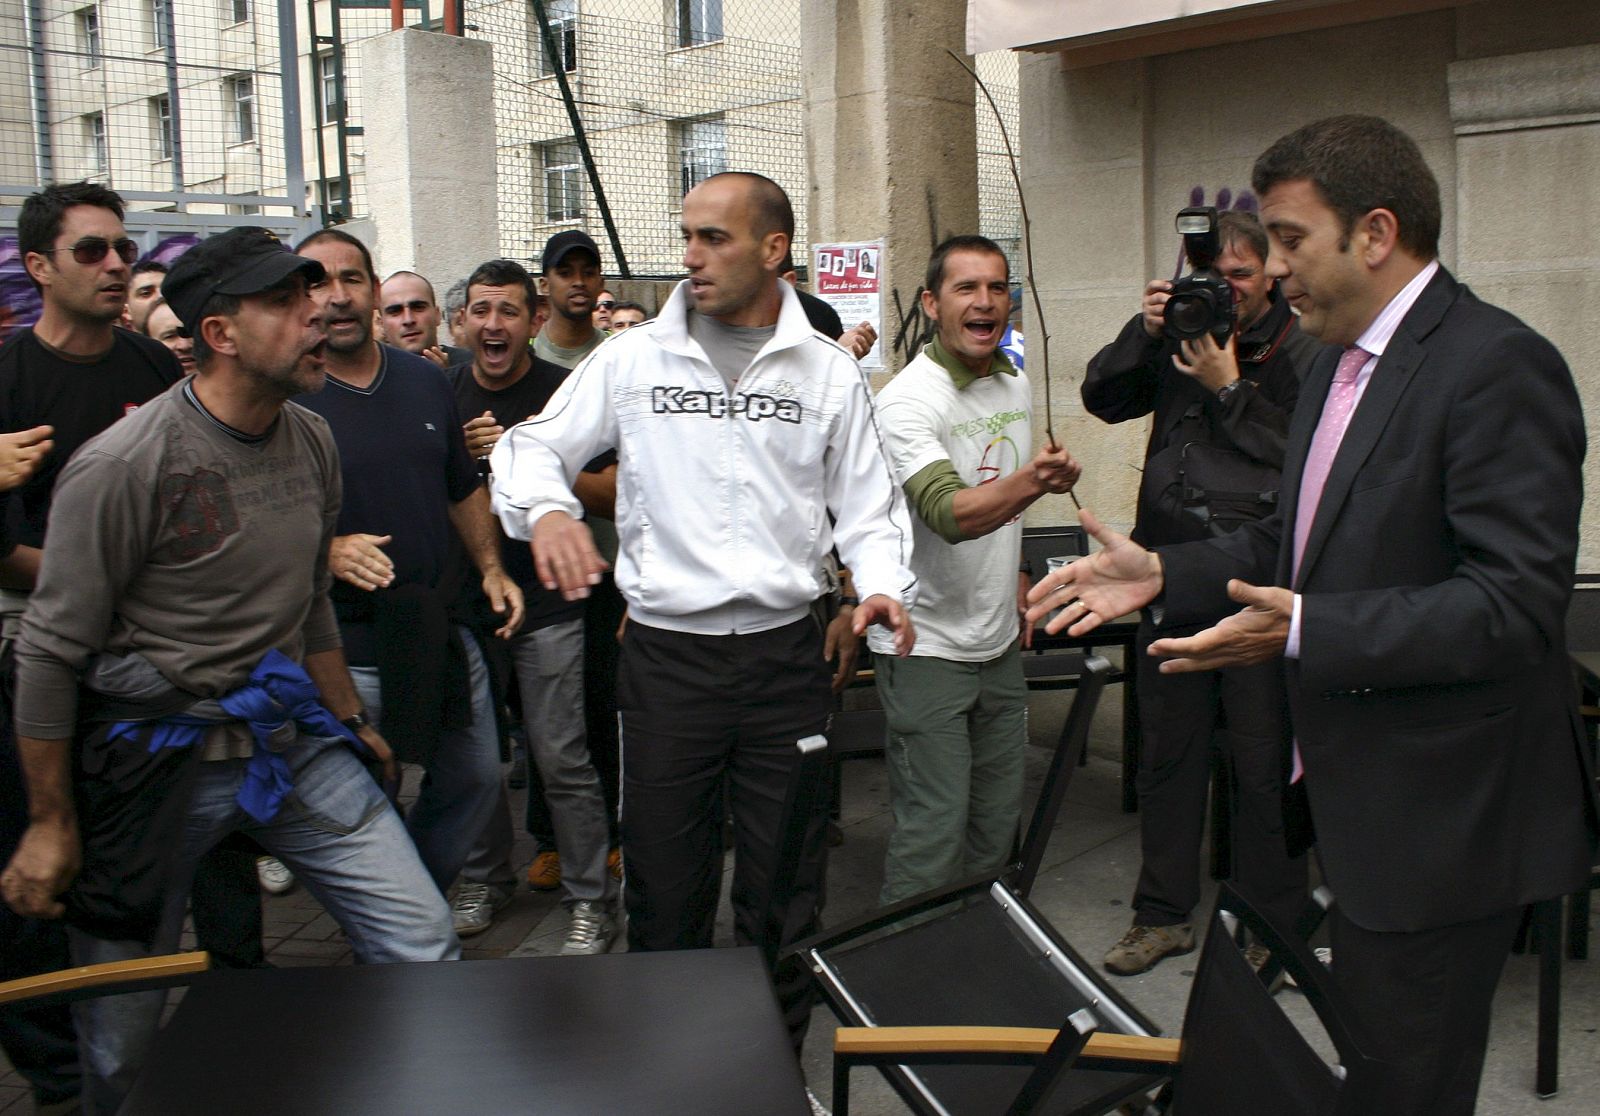 El alcalde de Ponferrada, Carlos López Riesco (derecha), ante el piquete de mineros en la terraza de una cafetería.